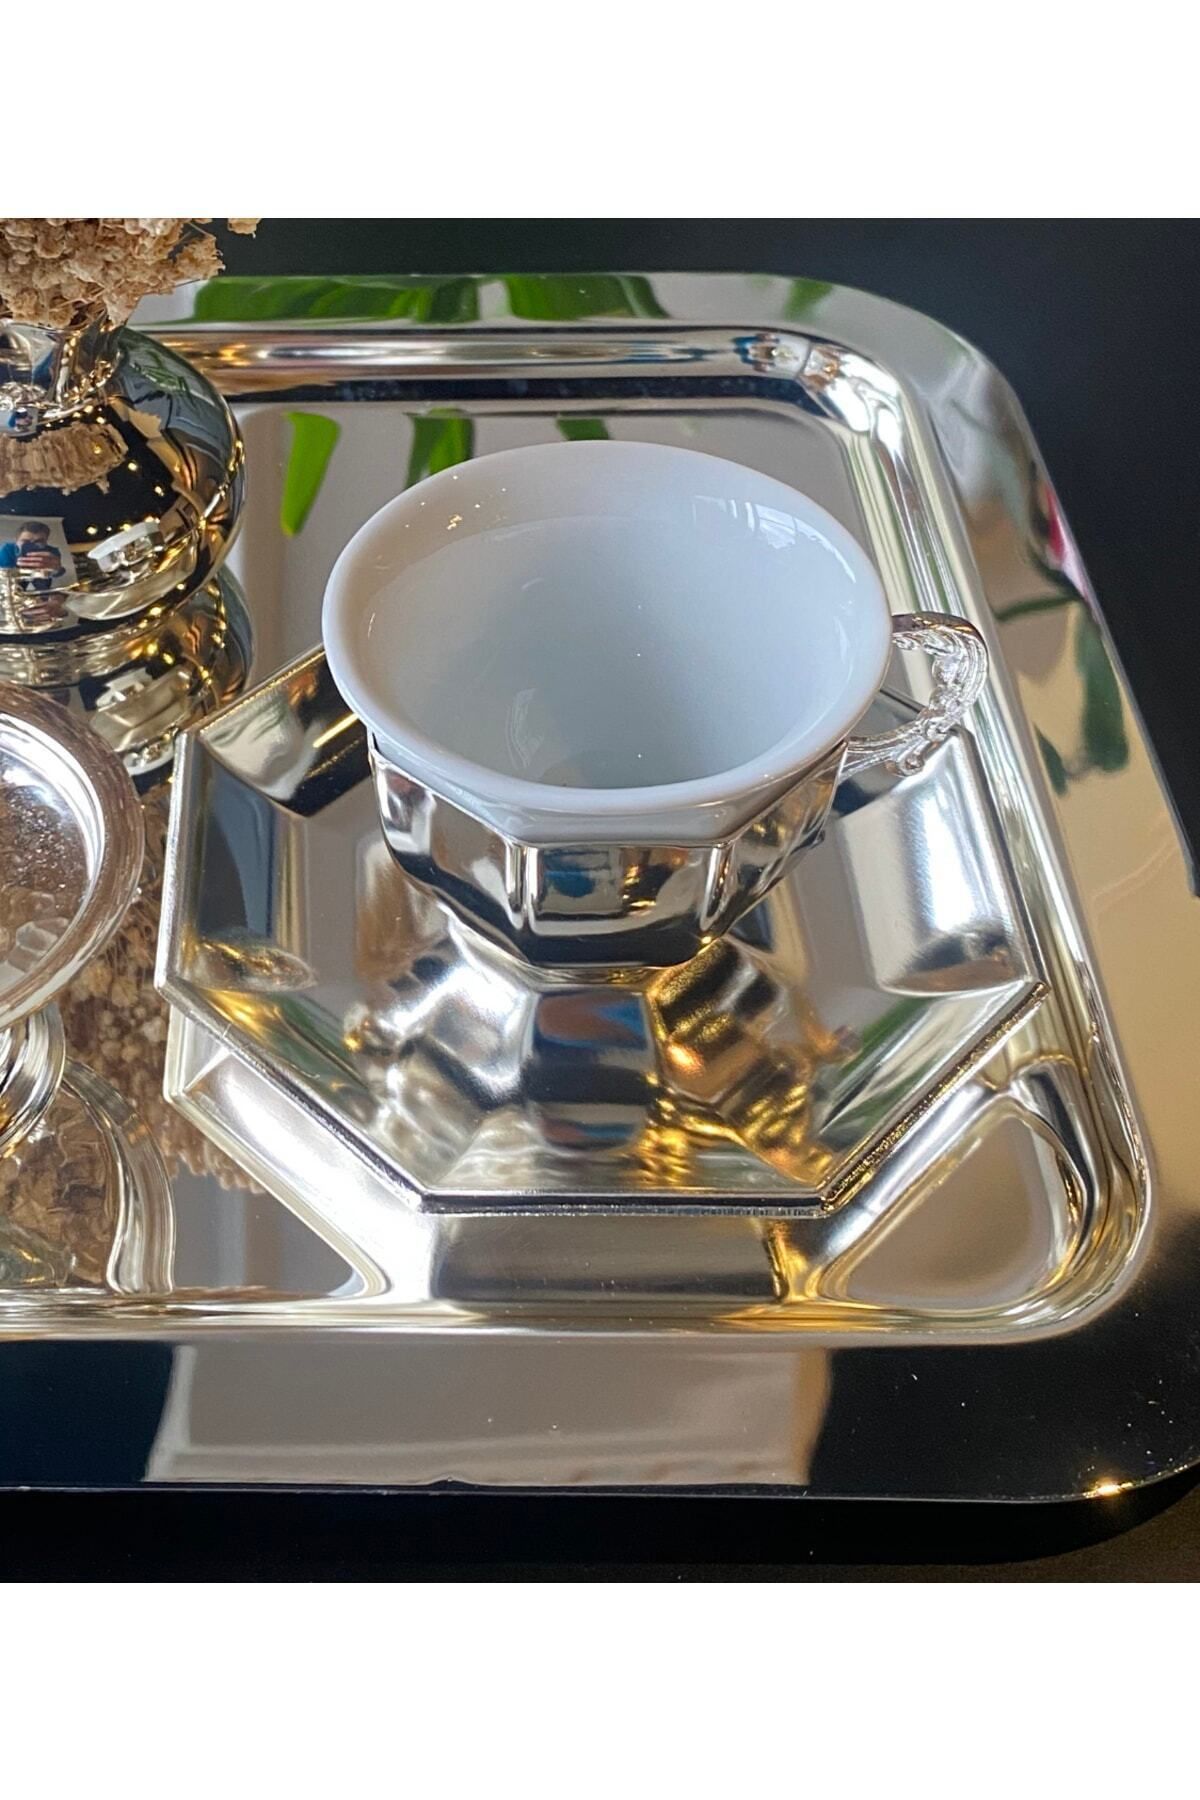 ABROZ HOME DESIGN Gümüş Kaplama Kahve Fincanı